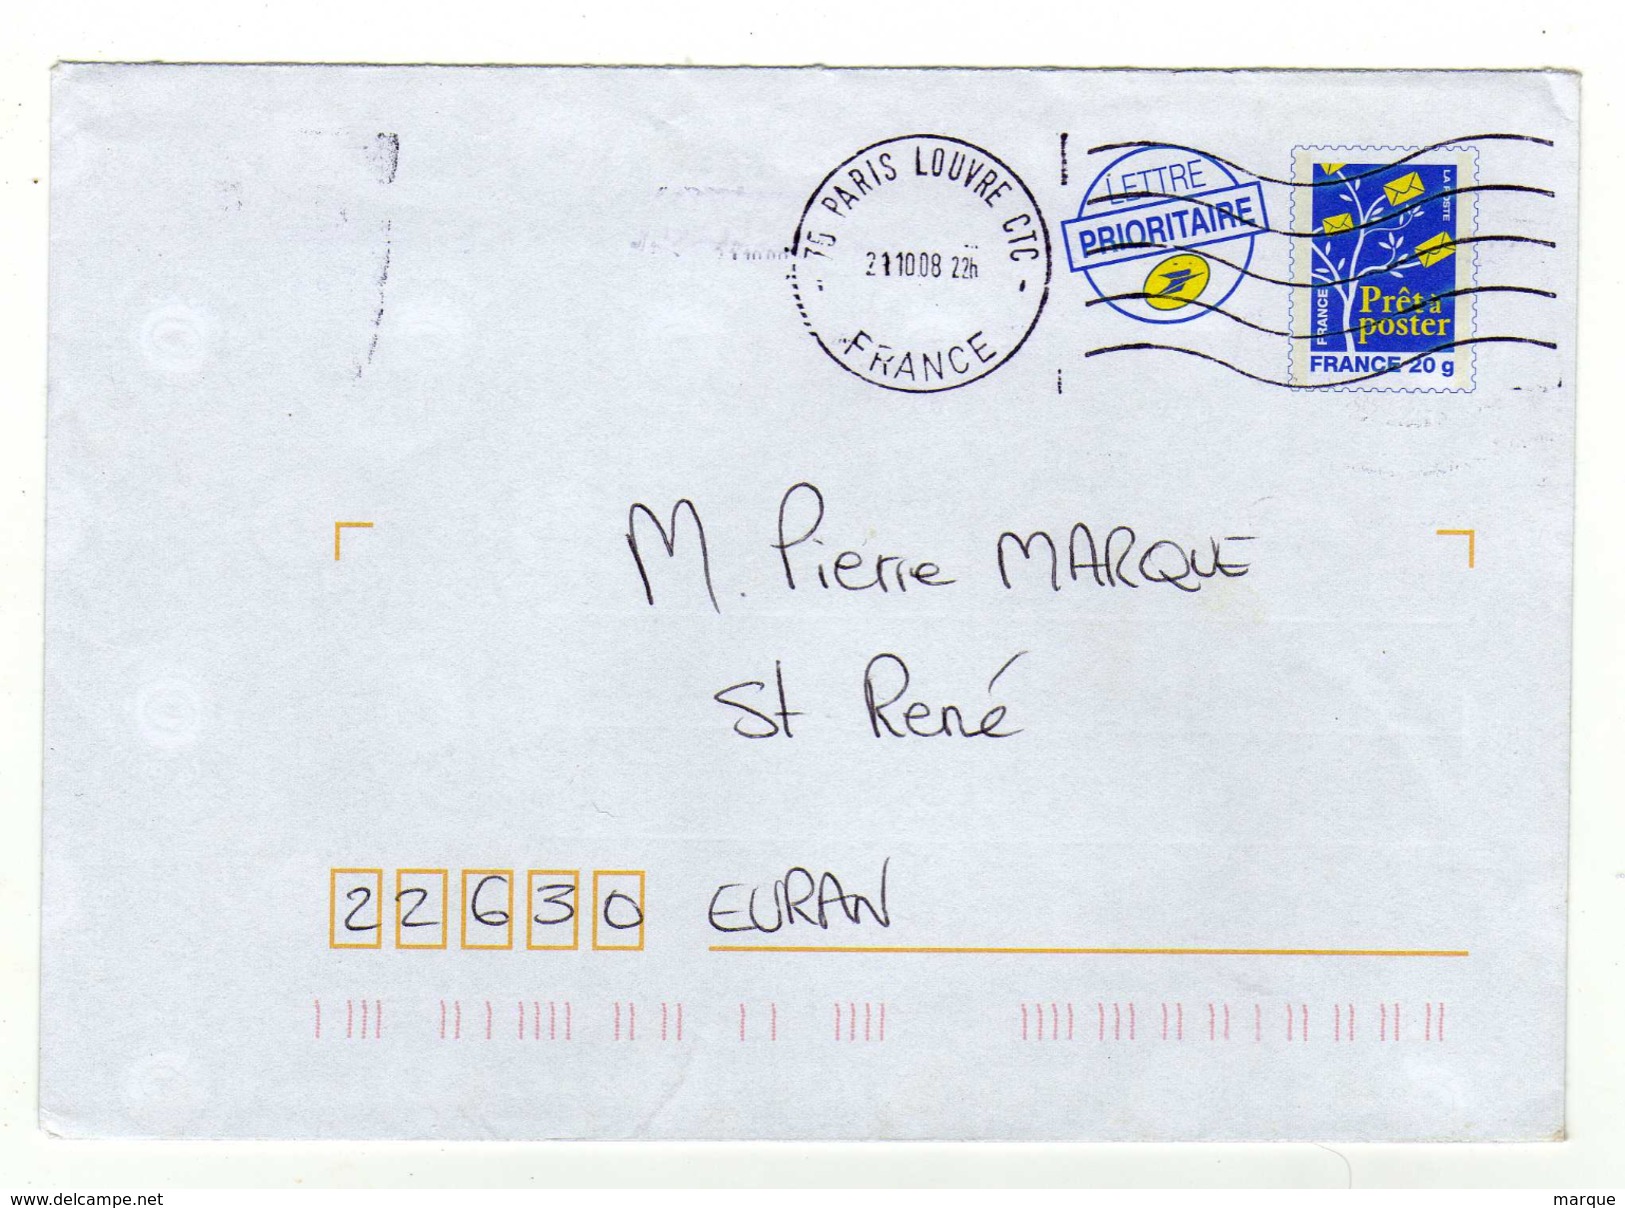 Enveloppe Prêt à Poster Oblitération 75 PARIS LOUVRE CTC 21/10/2008 - PAP: Aufdrucke/Blaues Logo